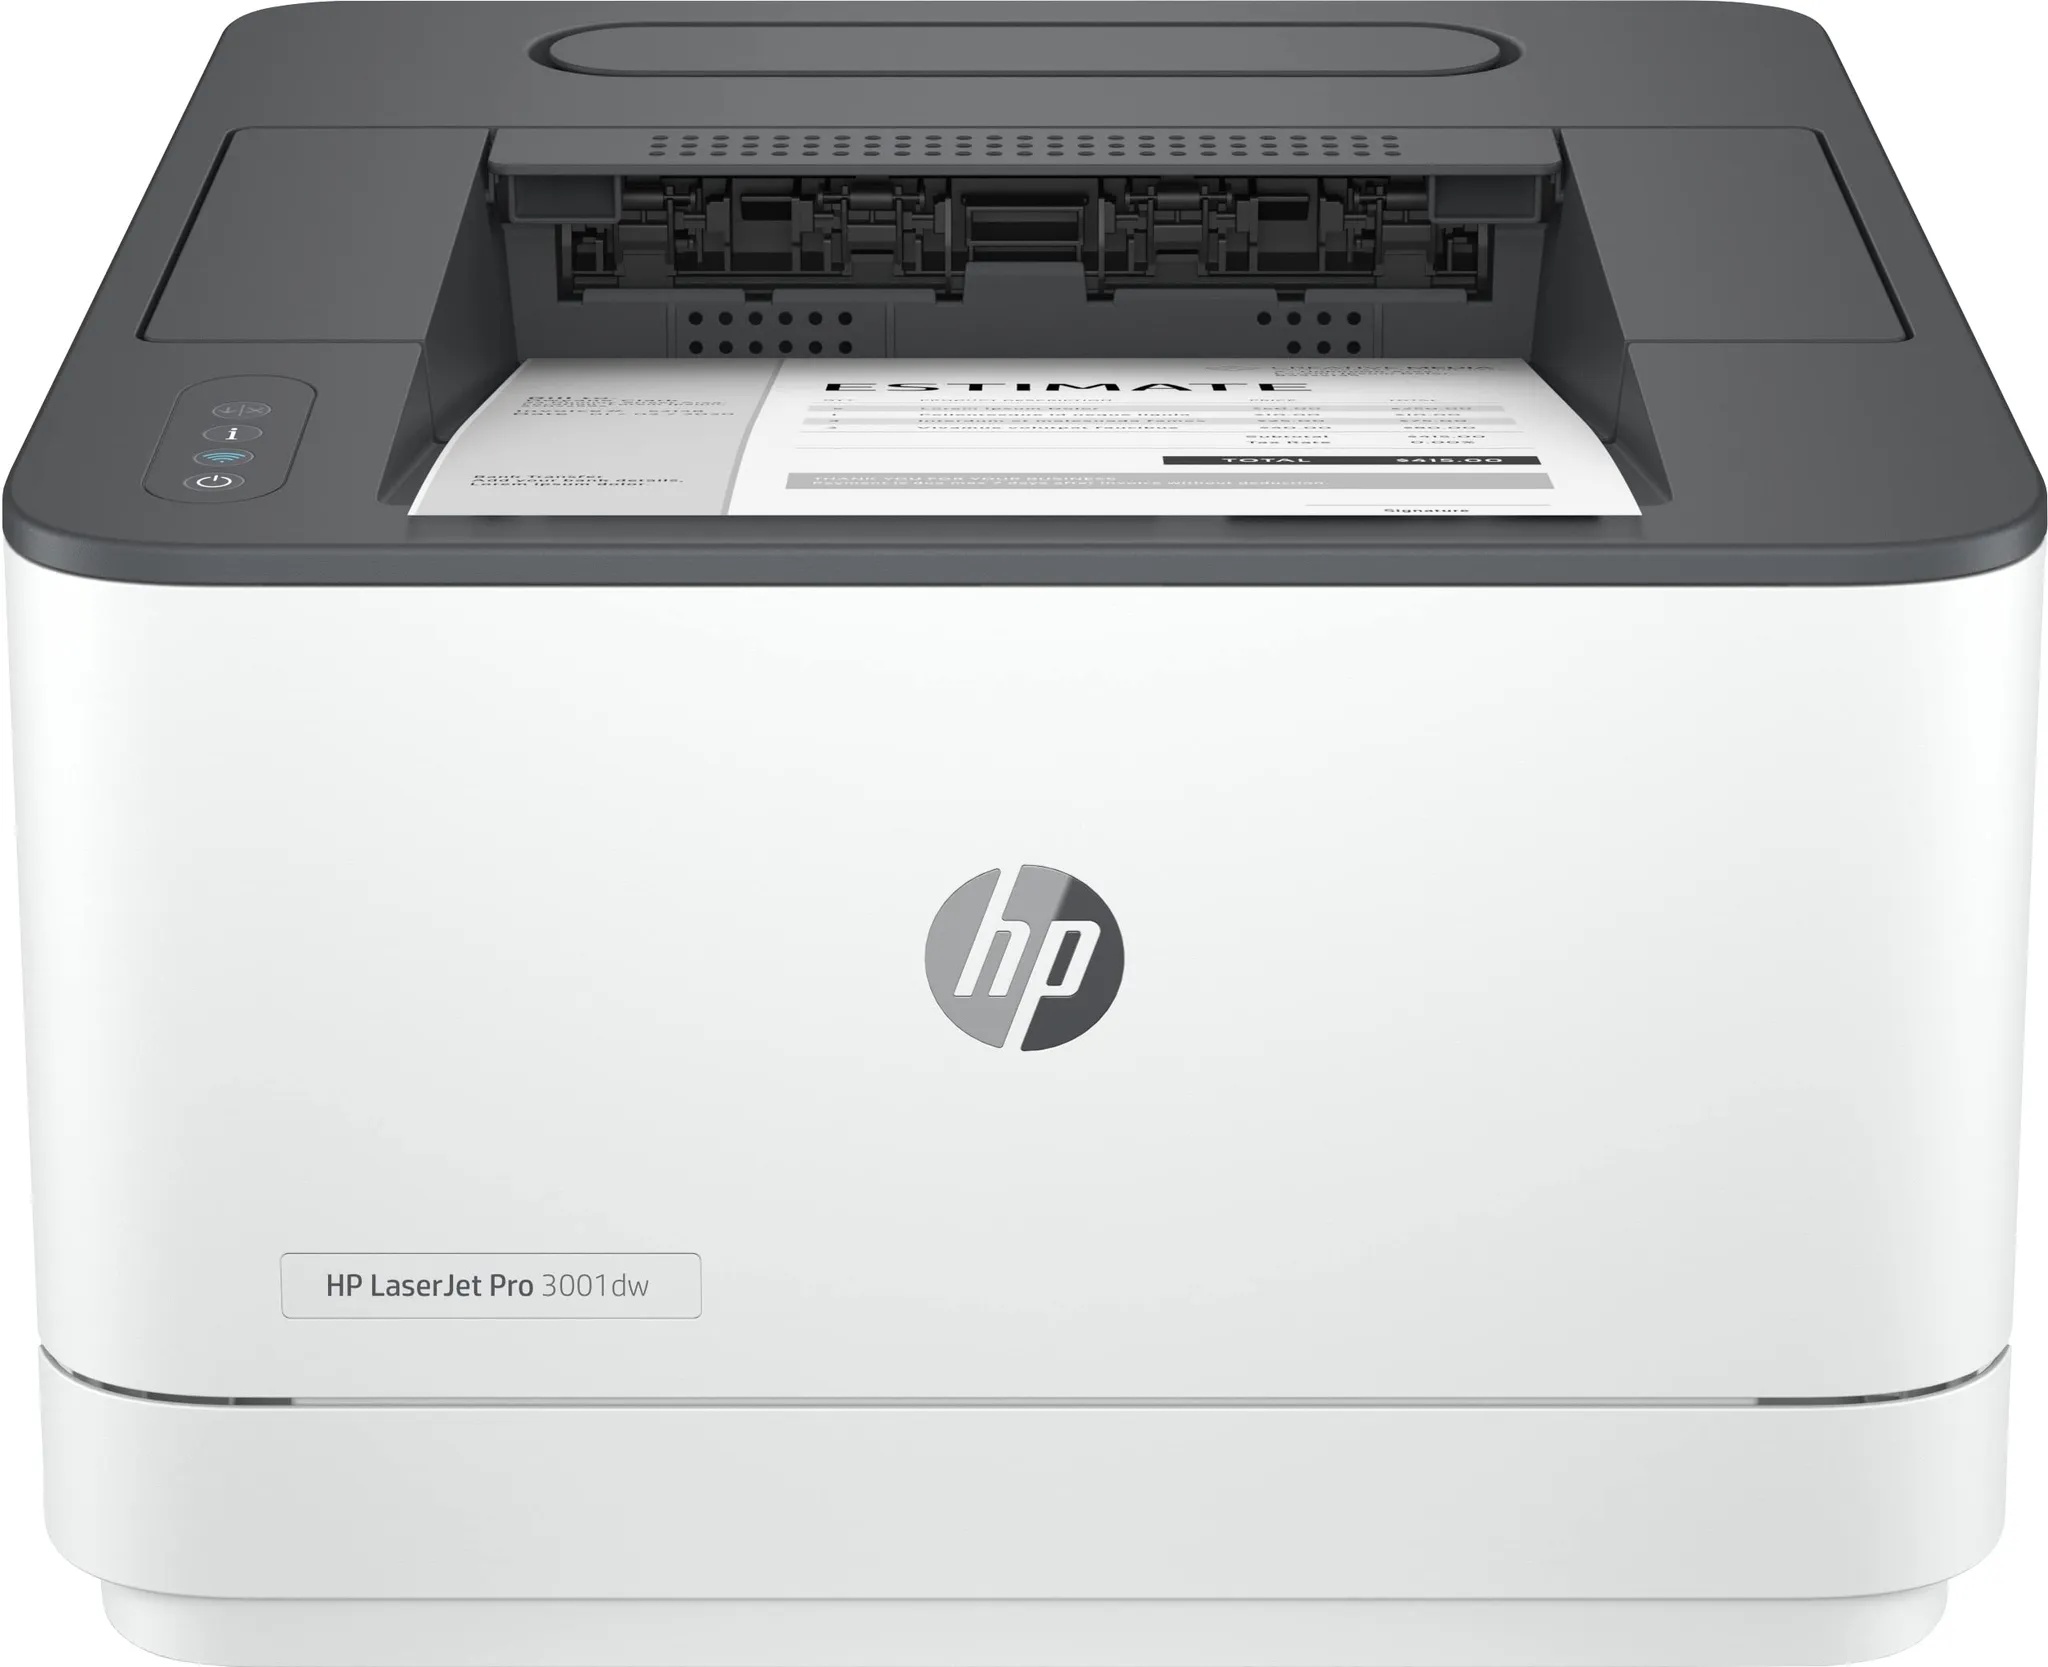 HP Laserjet Pro 3002dwe Laserdrucker, Drucker,6 Monate gratis drucken mit HP Instant Ink inklusive, HP+, WLAN, LAN, Duplex, Airprint, mit HP+ für Business, für Arbeitsteams mit bis zu 7 Personen, Weiß